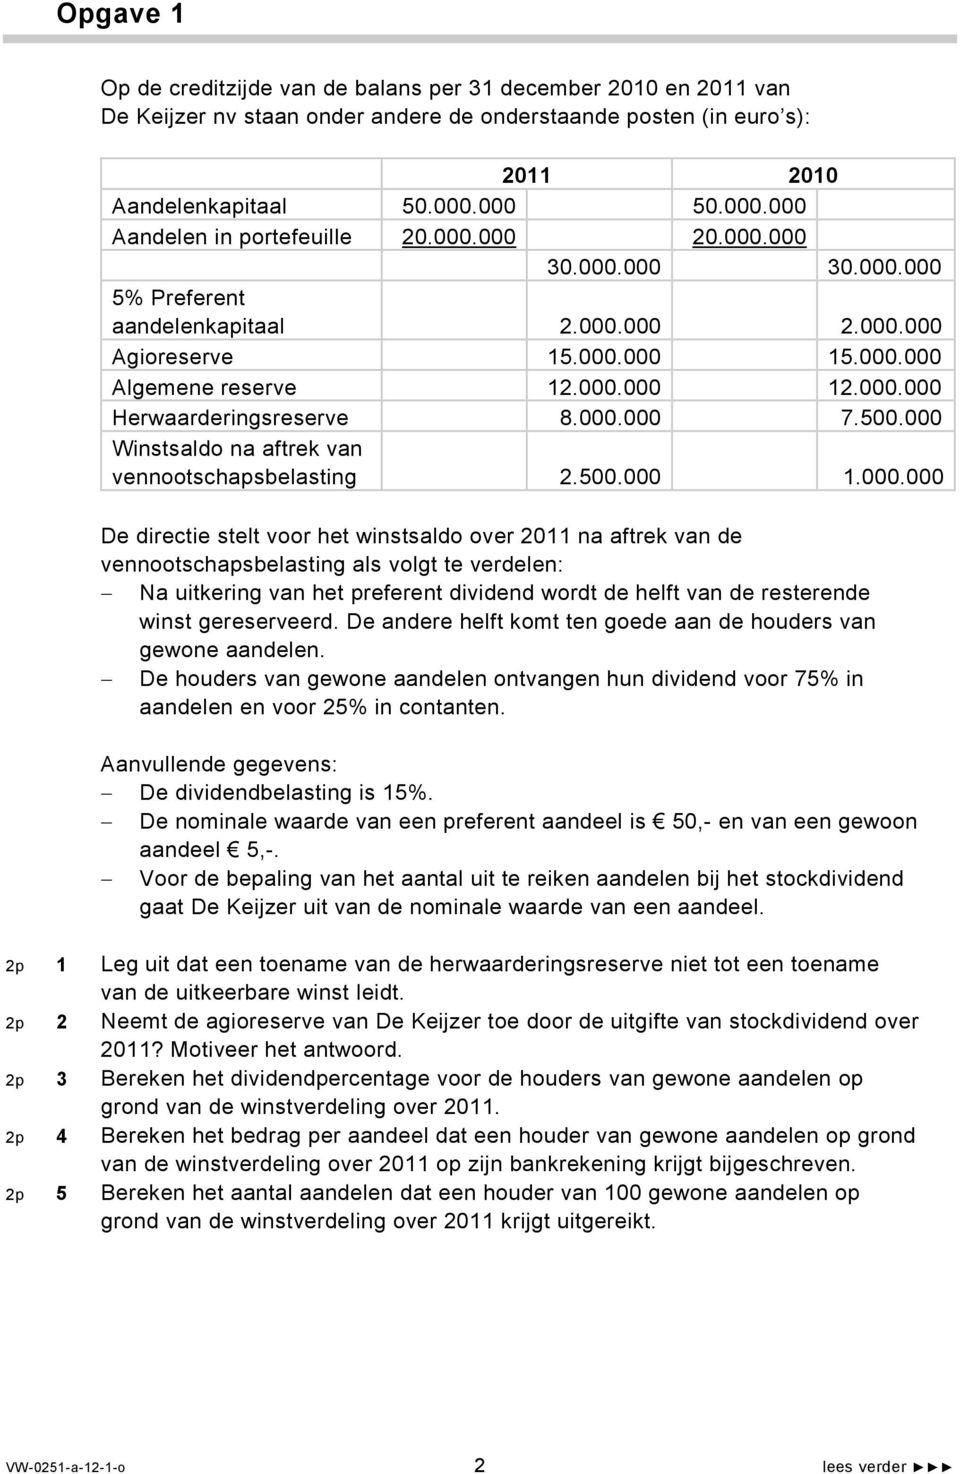 000.000 Herwaarderingsreserve 8.000.000 7.500.000 Winstsaldo na aftrek van vennootschapsbelasting 2.500.000 1.000.000 De directie stelt voor het winstsaldo over 2011 na aftrek van de